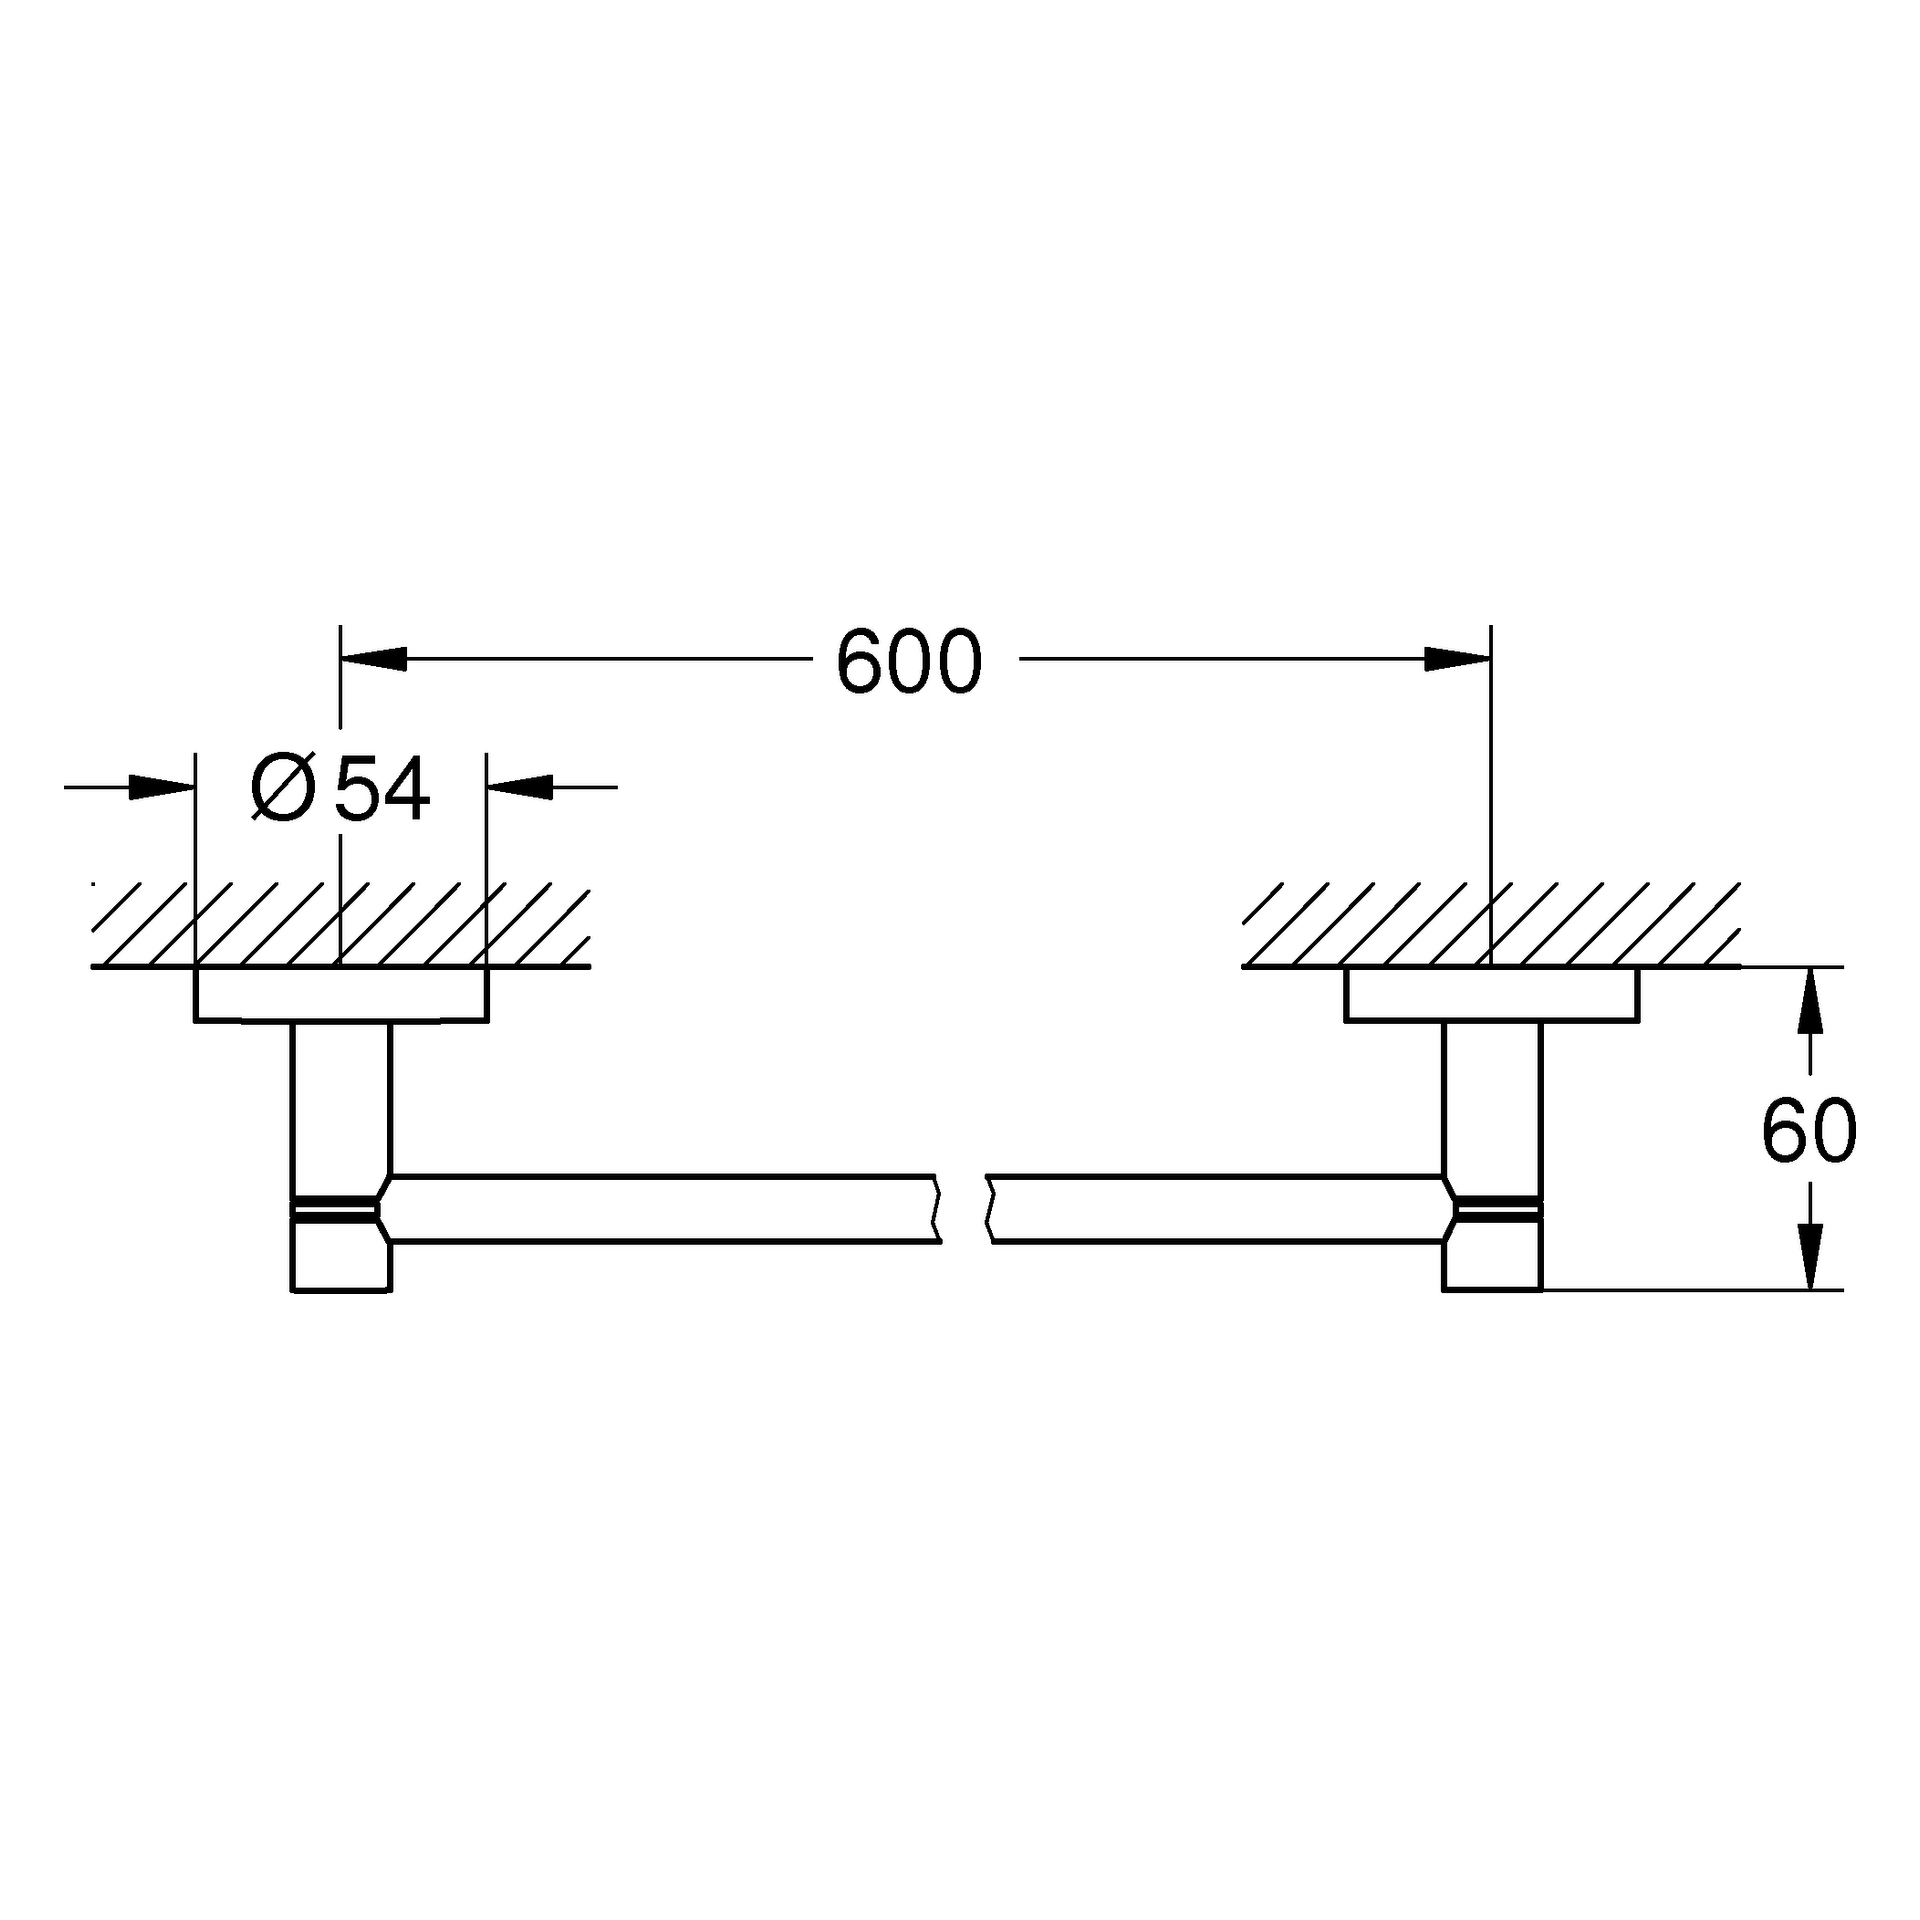 Badetuchhalter Essentials 40366_1, 654 mm, chrom